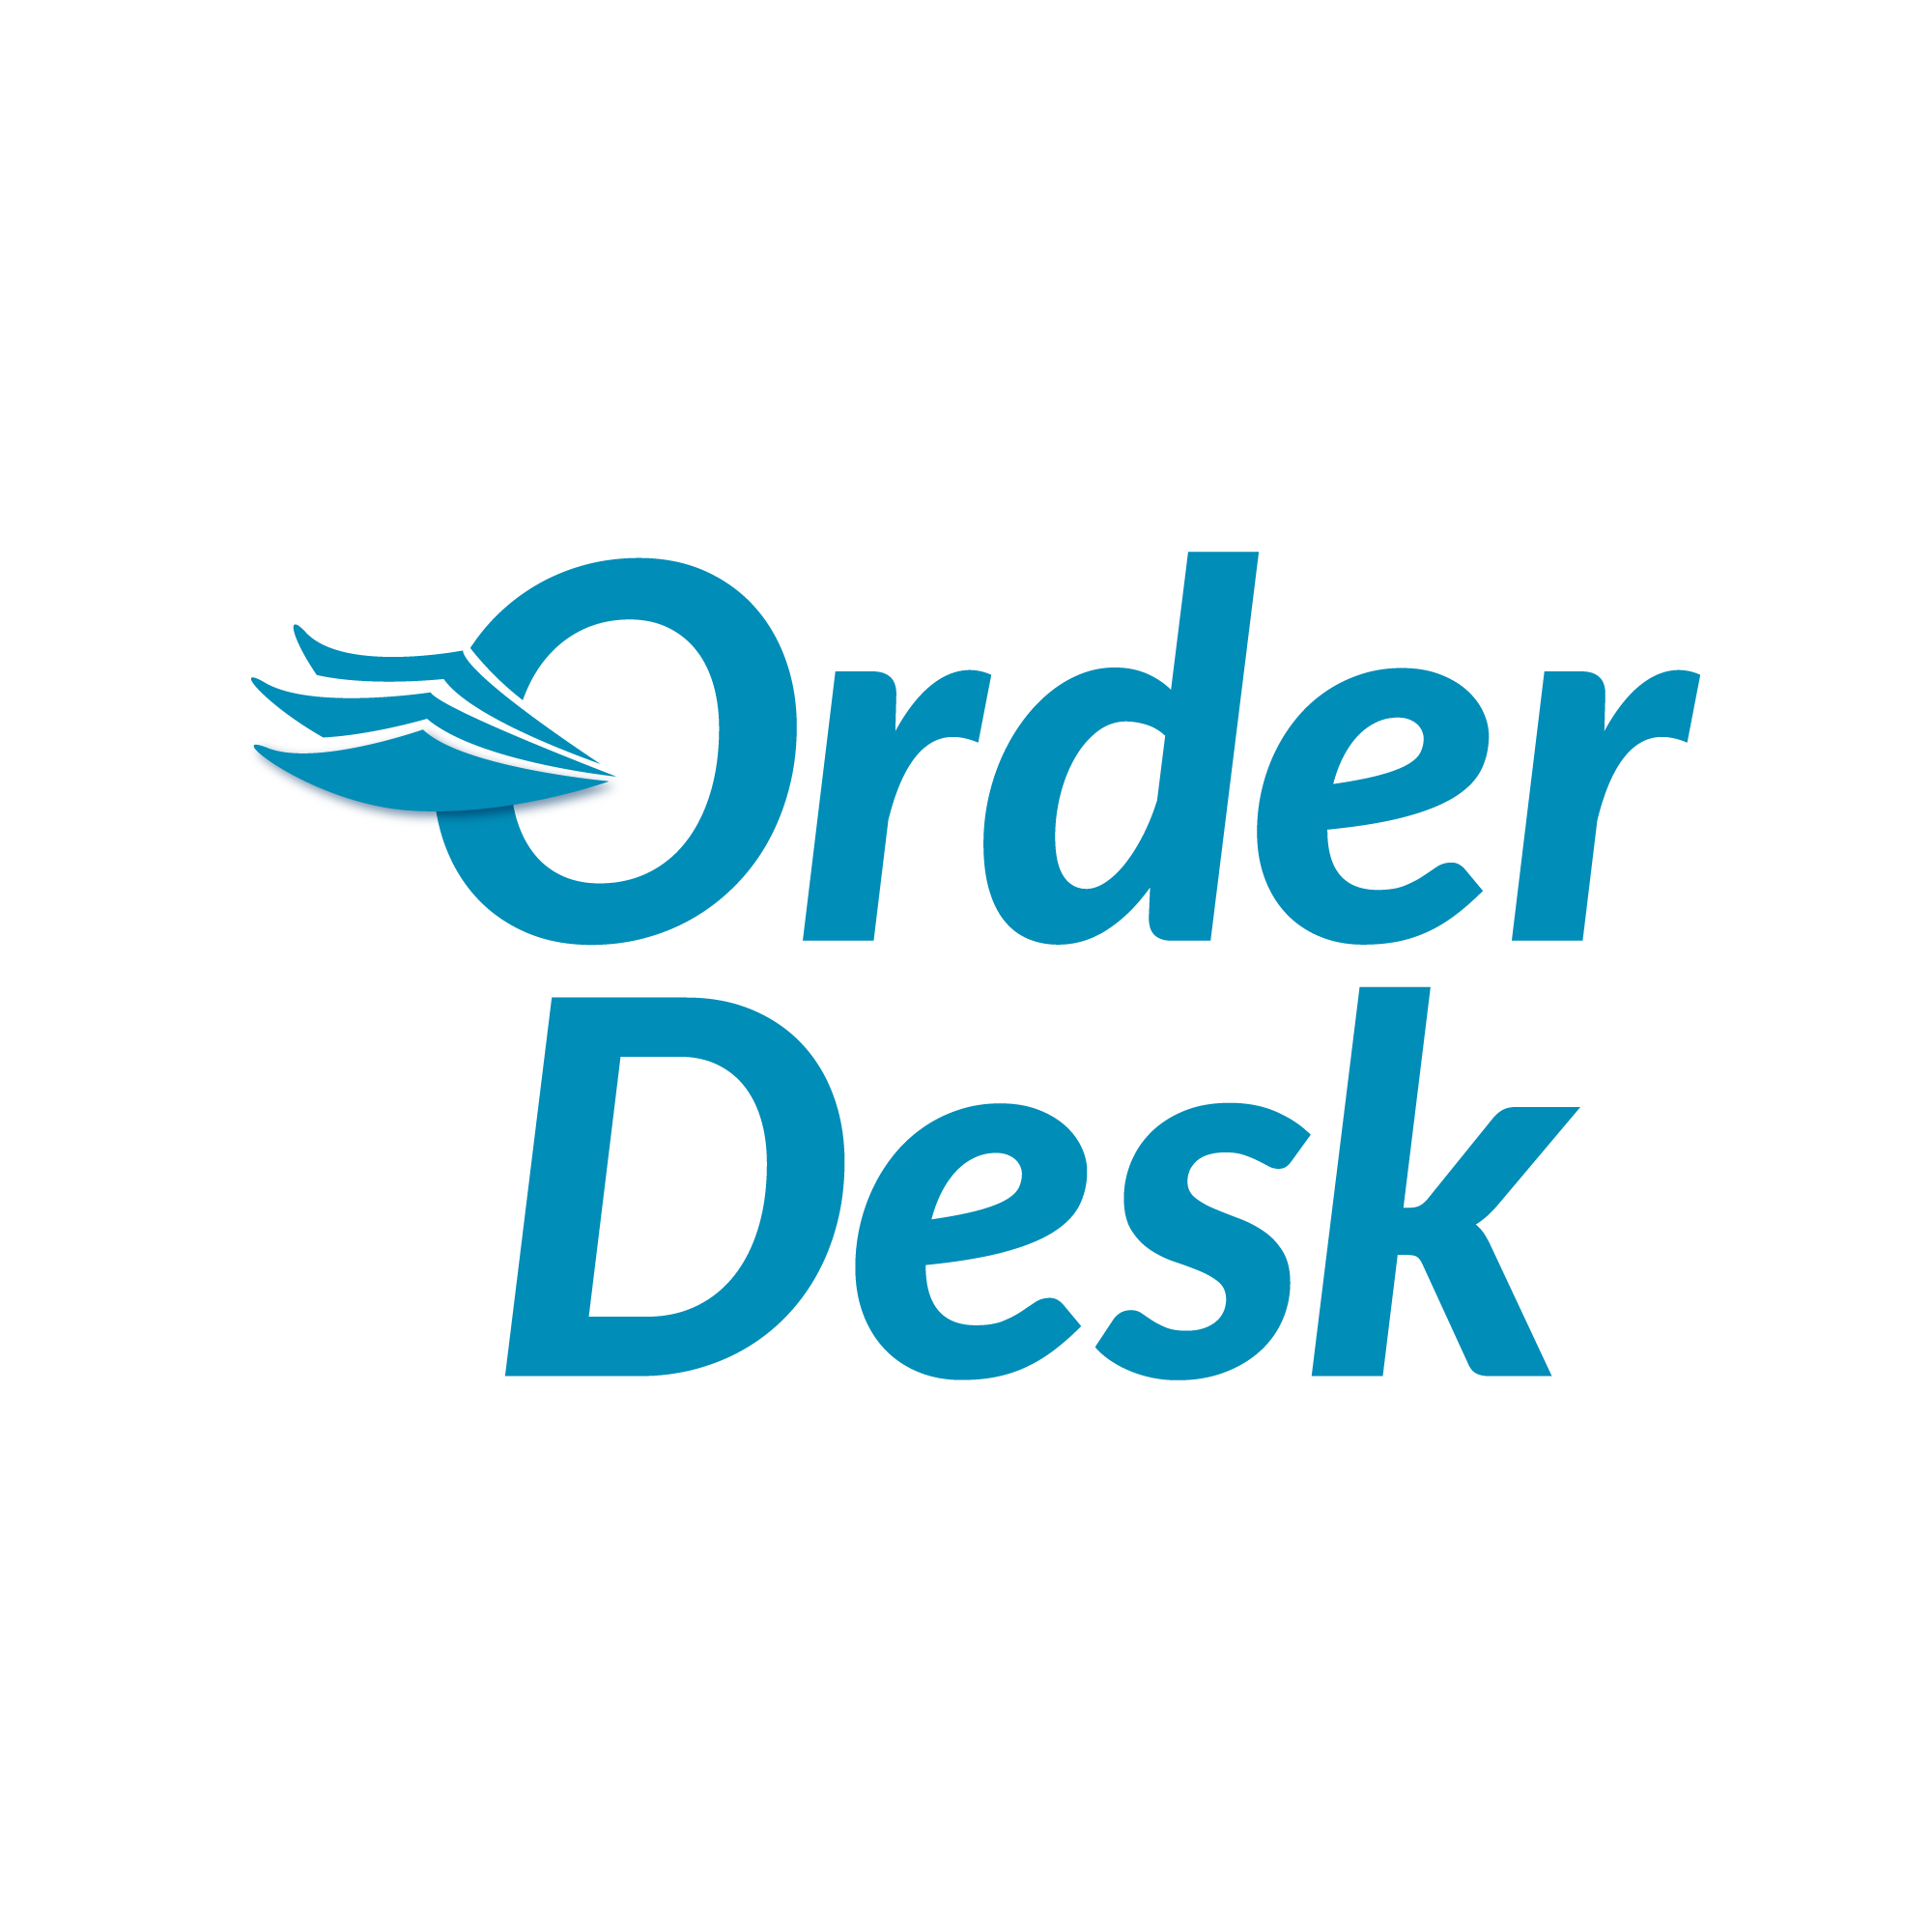 Desk Logo - Our Brand